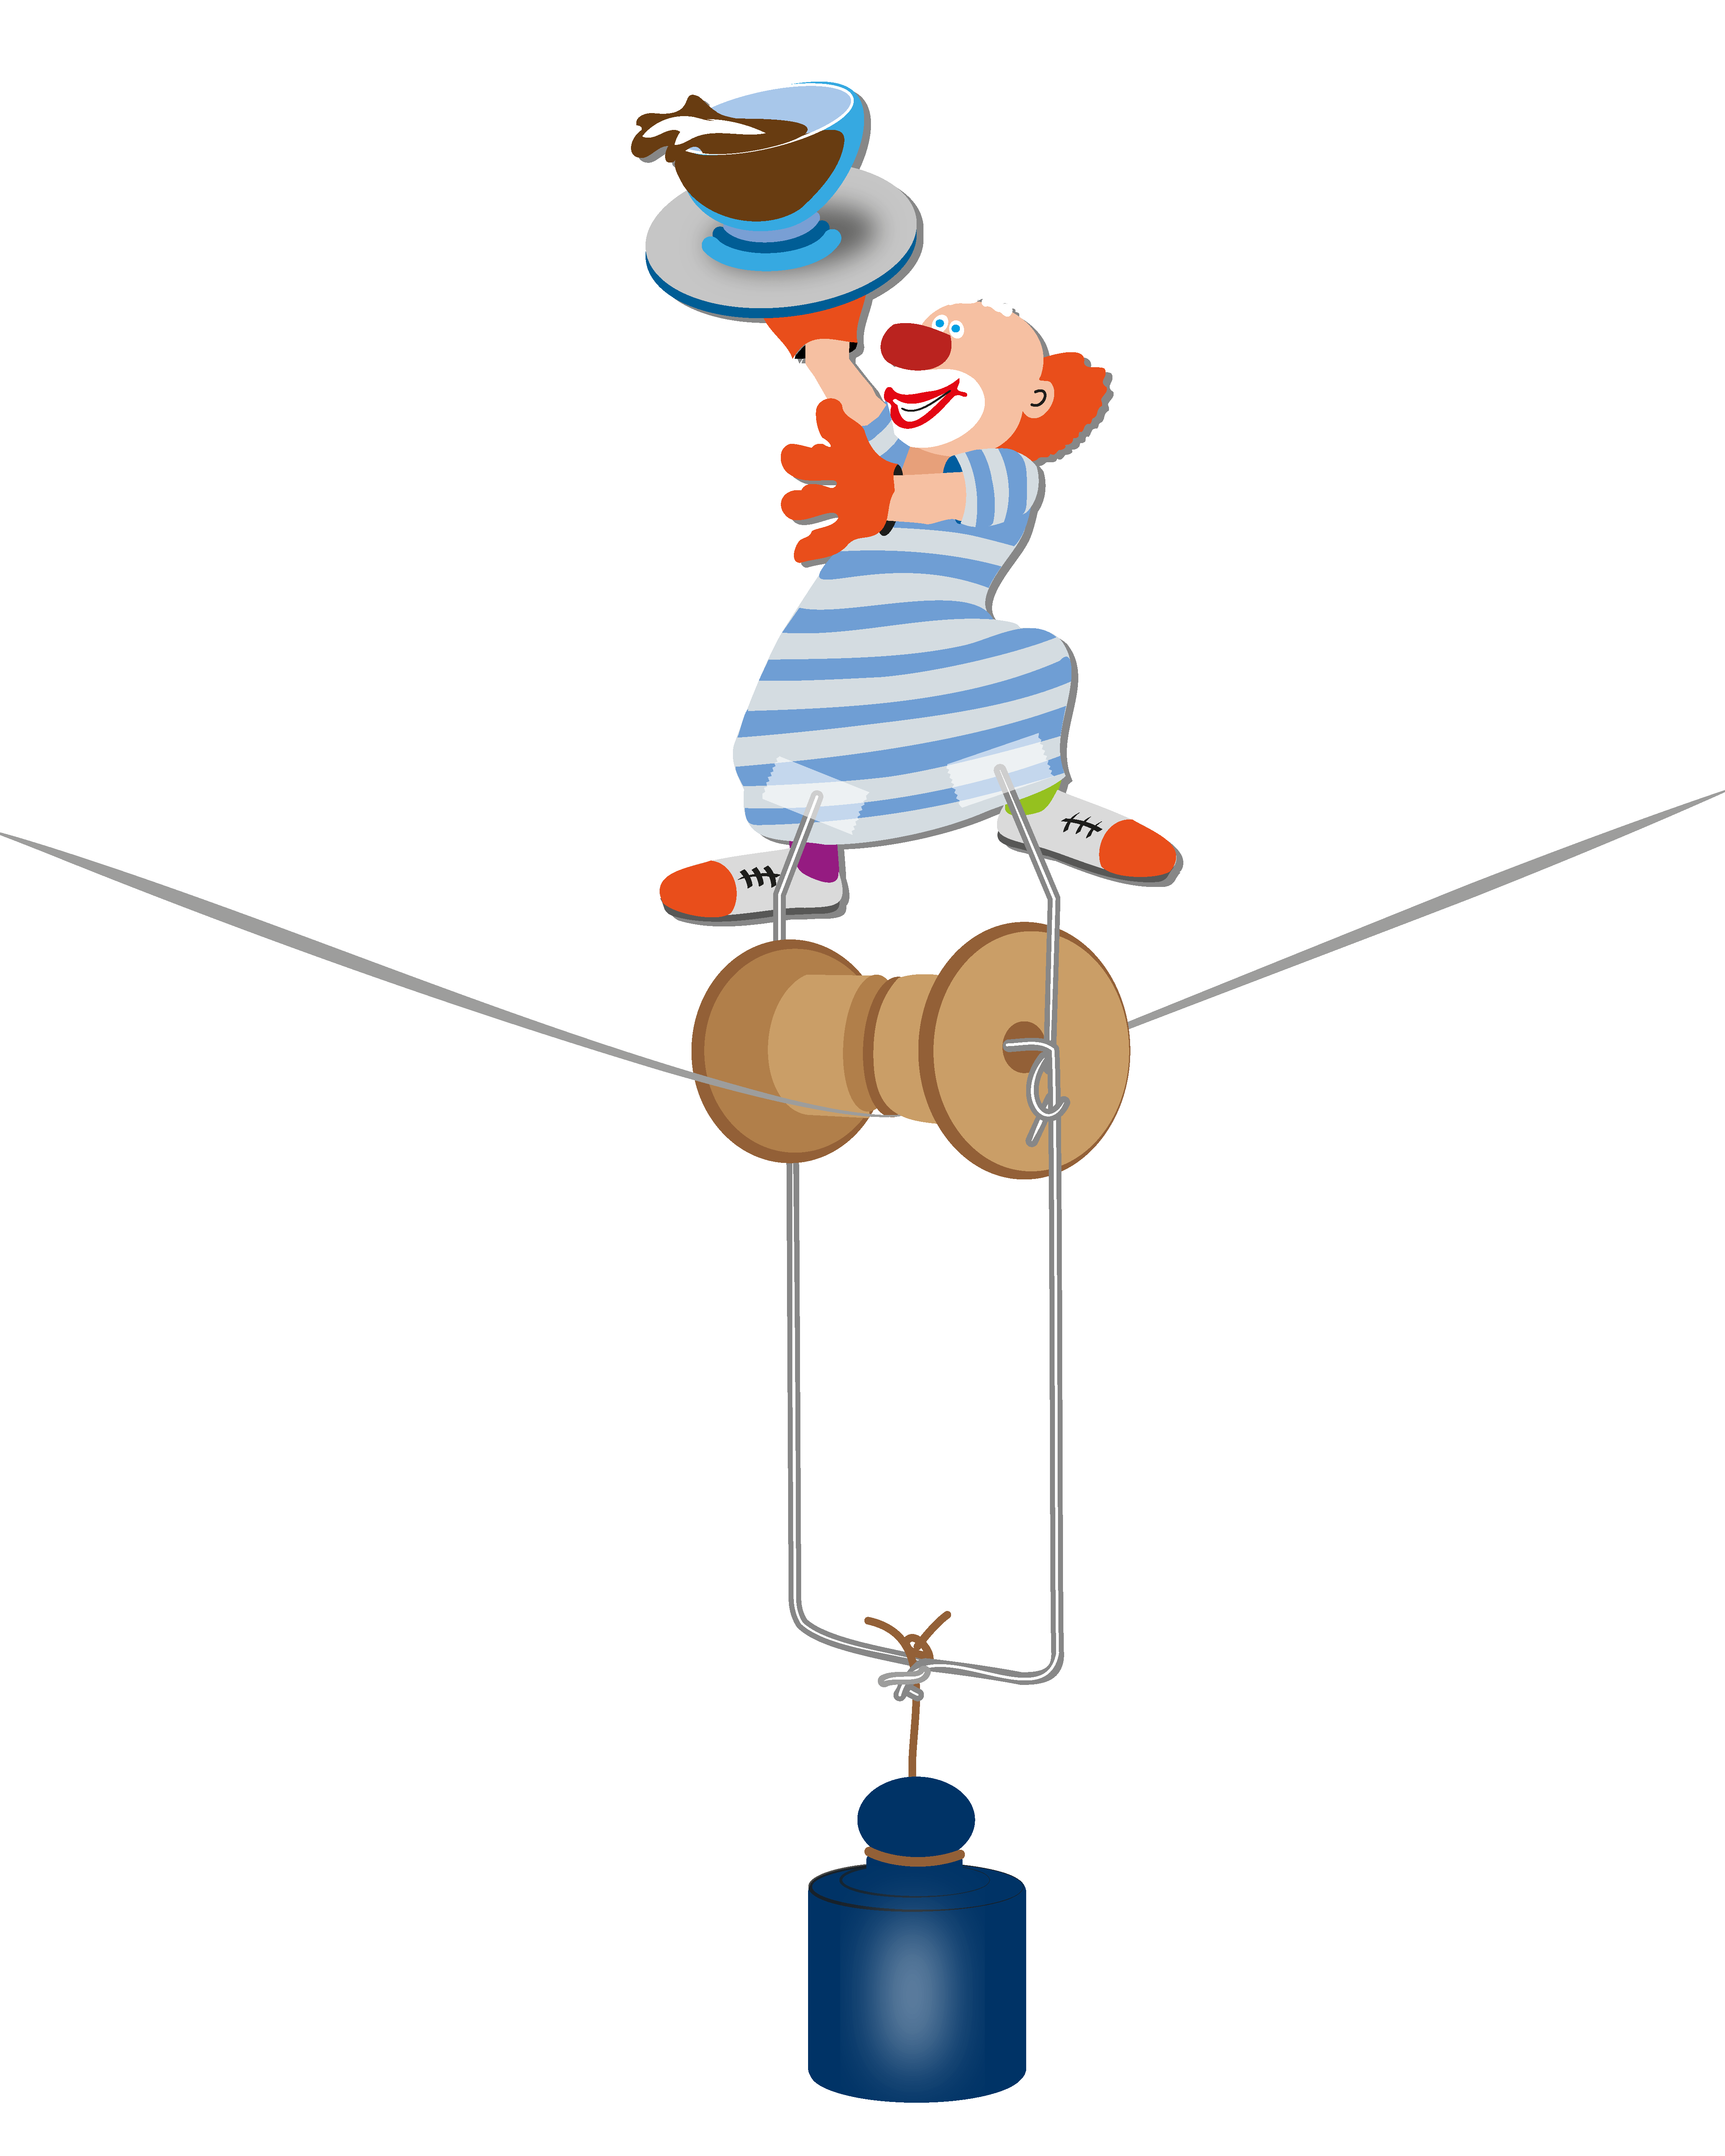 Lernmedien Illustration Sekundarstufe 1 | Physik: Im Physik-Experiment gerät ein mutig balancierende Kellner-Clown auf einem Hochseil dank Stabilisierung durch ein starkes Gegengewicht nie in Schräglage.